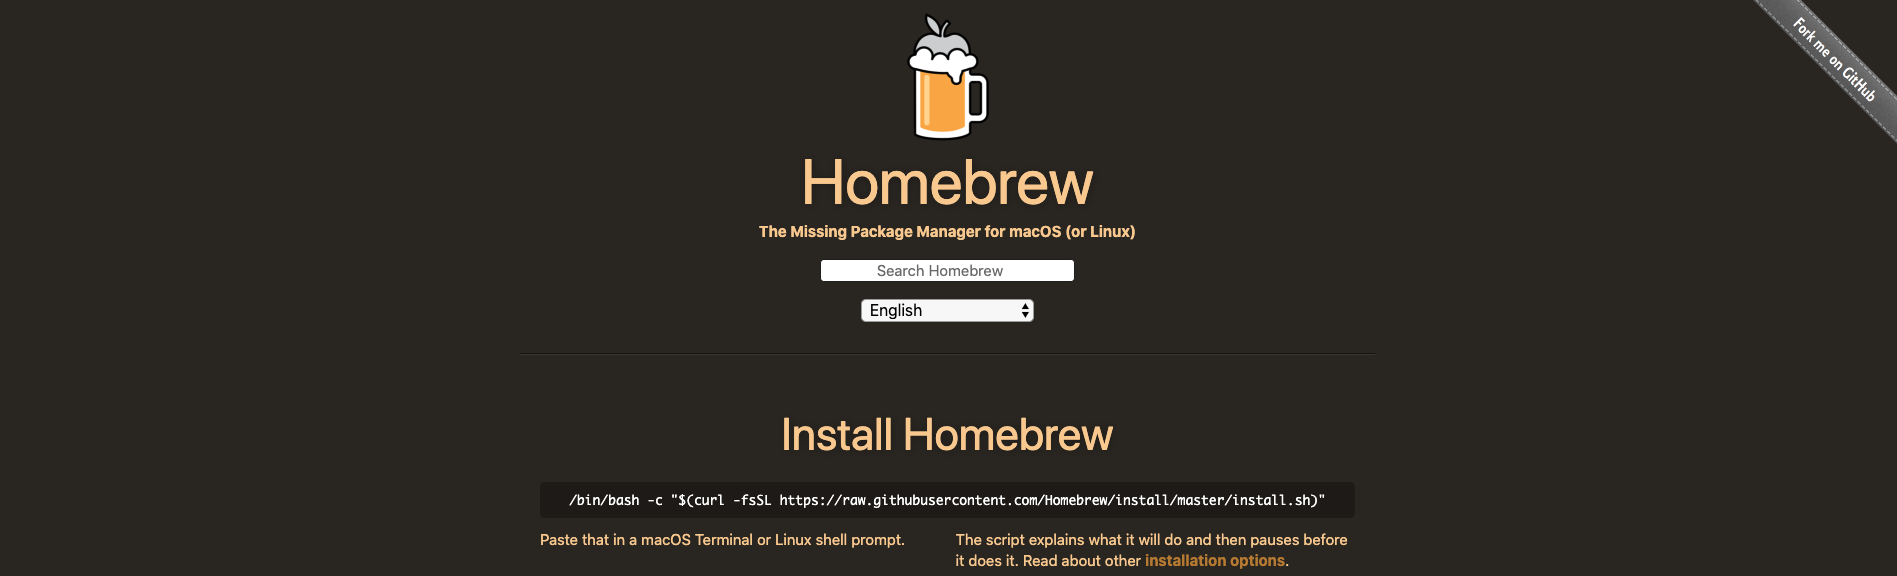 The Homebrew Homepage